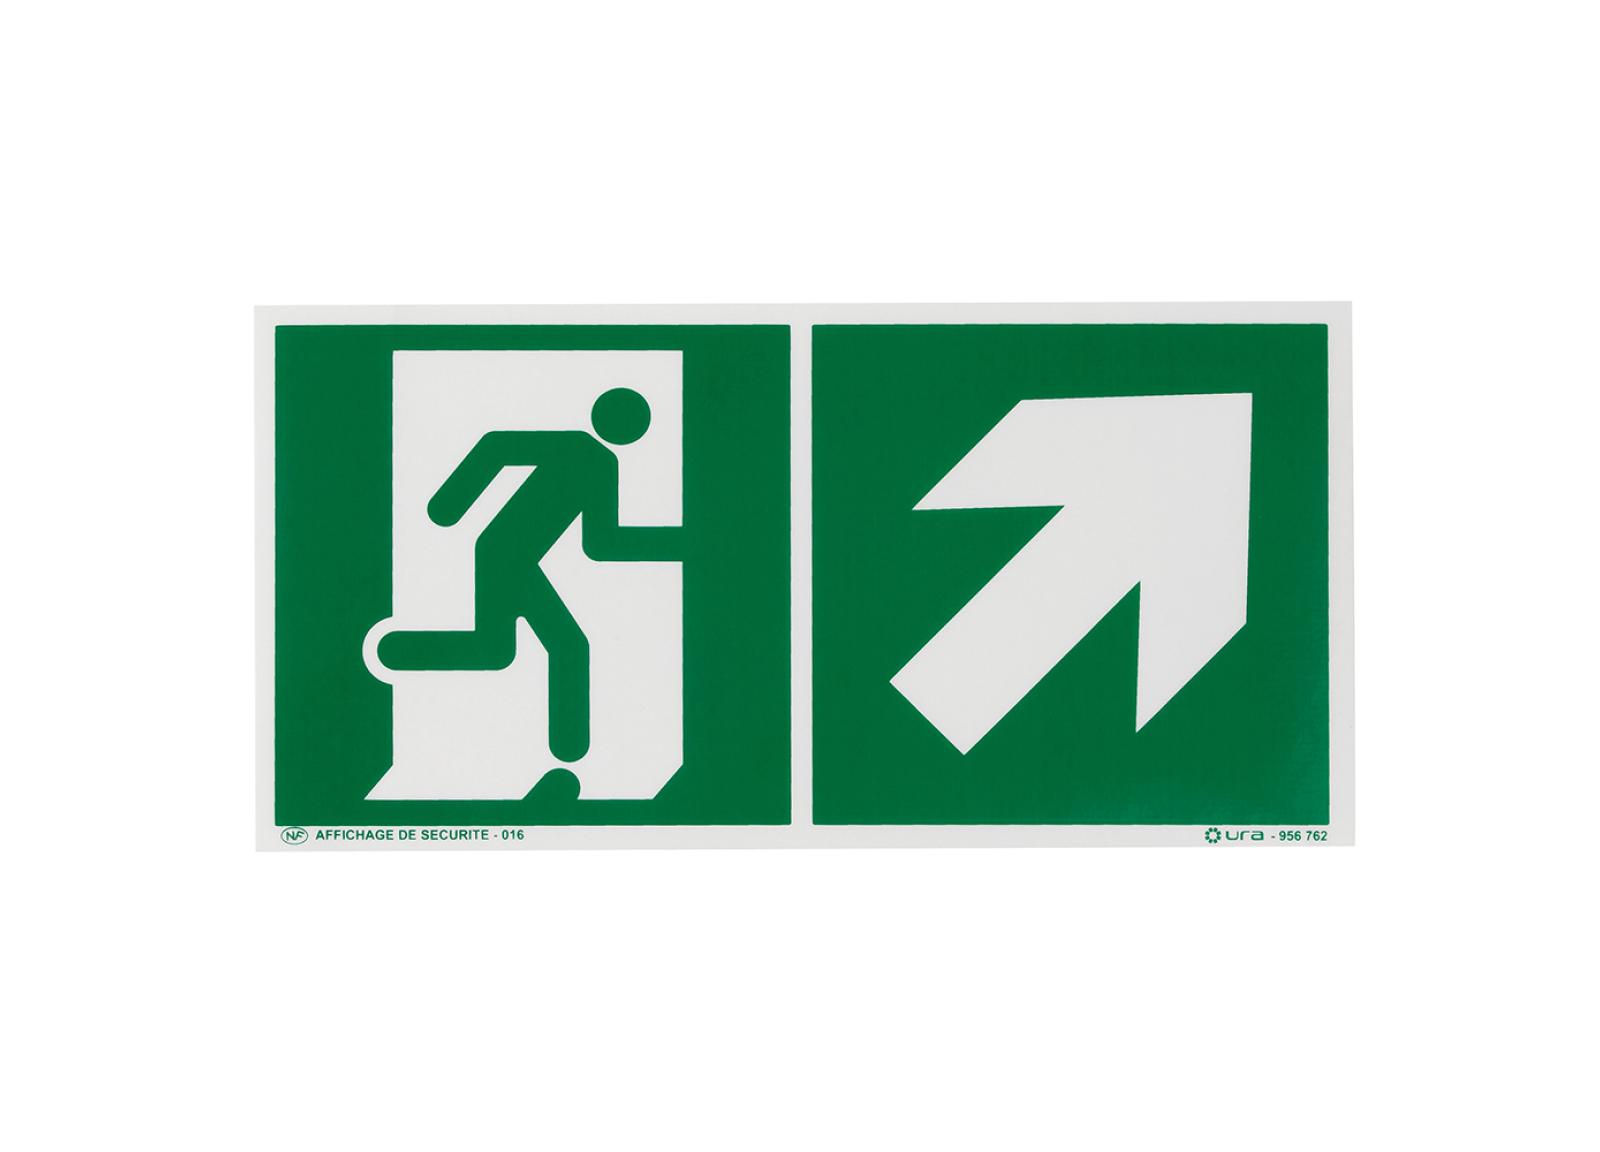 Pictogramme autocollant pour signalisation évacuation avec symbole flèche vers le haut à droite